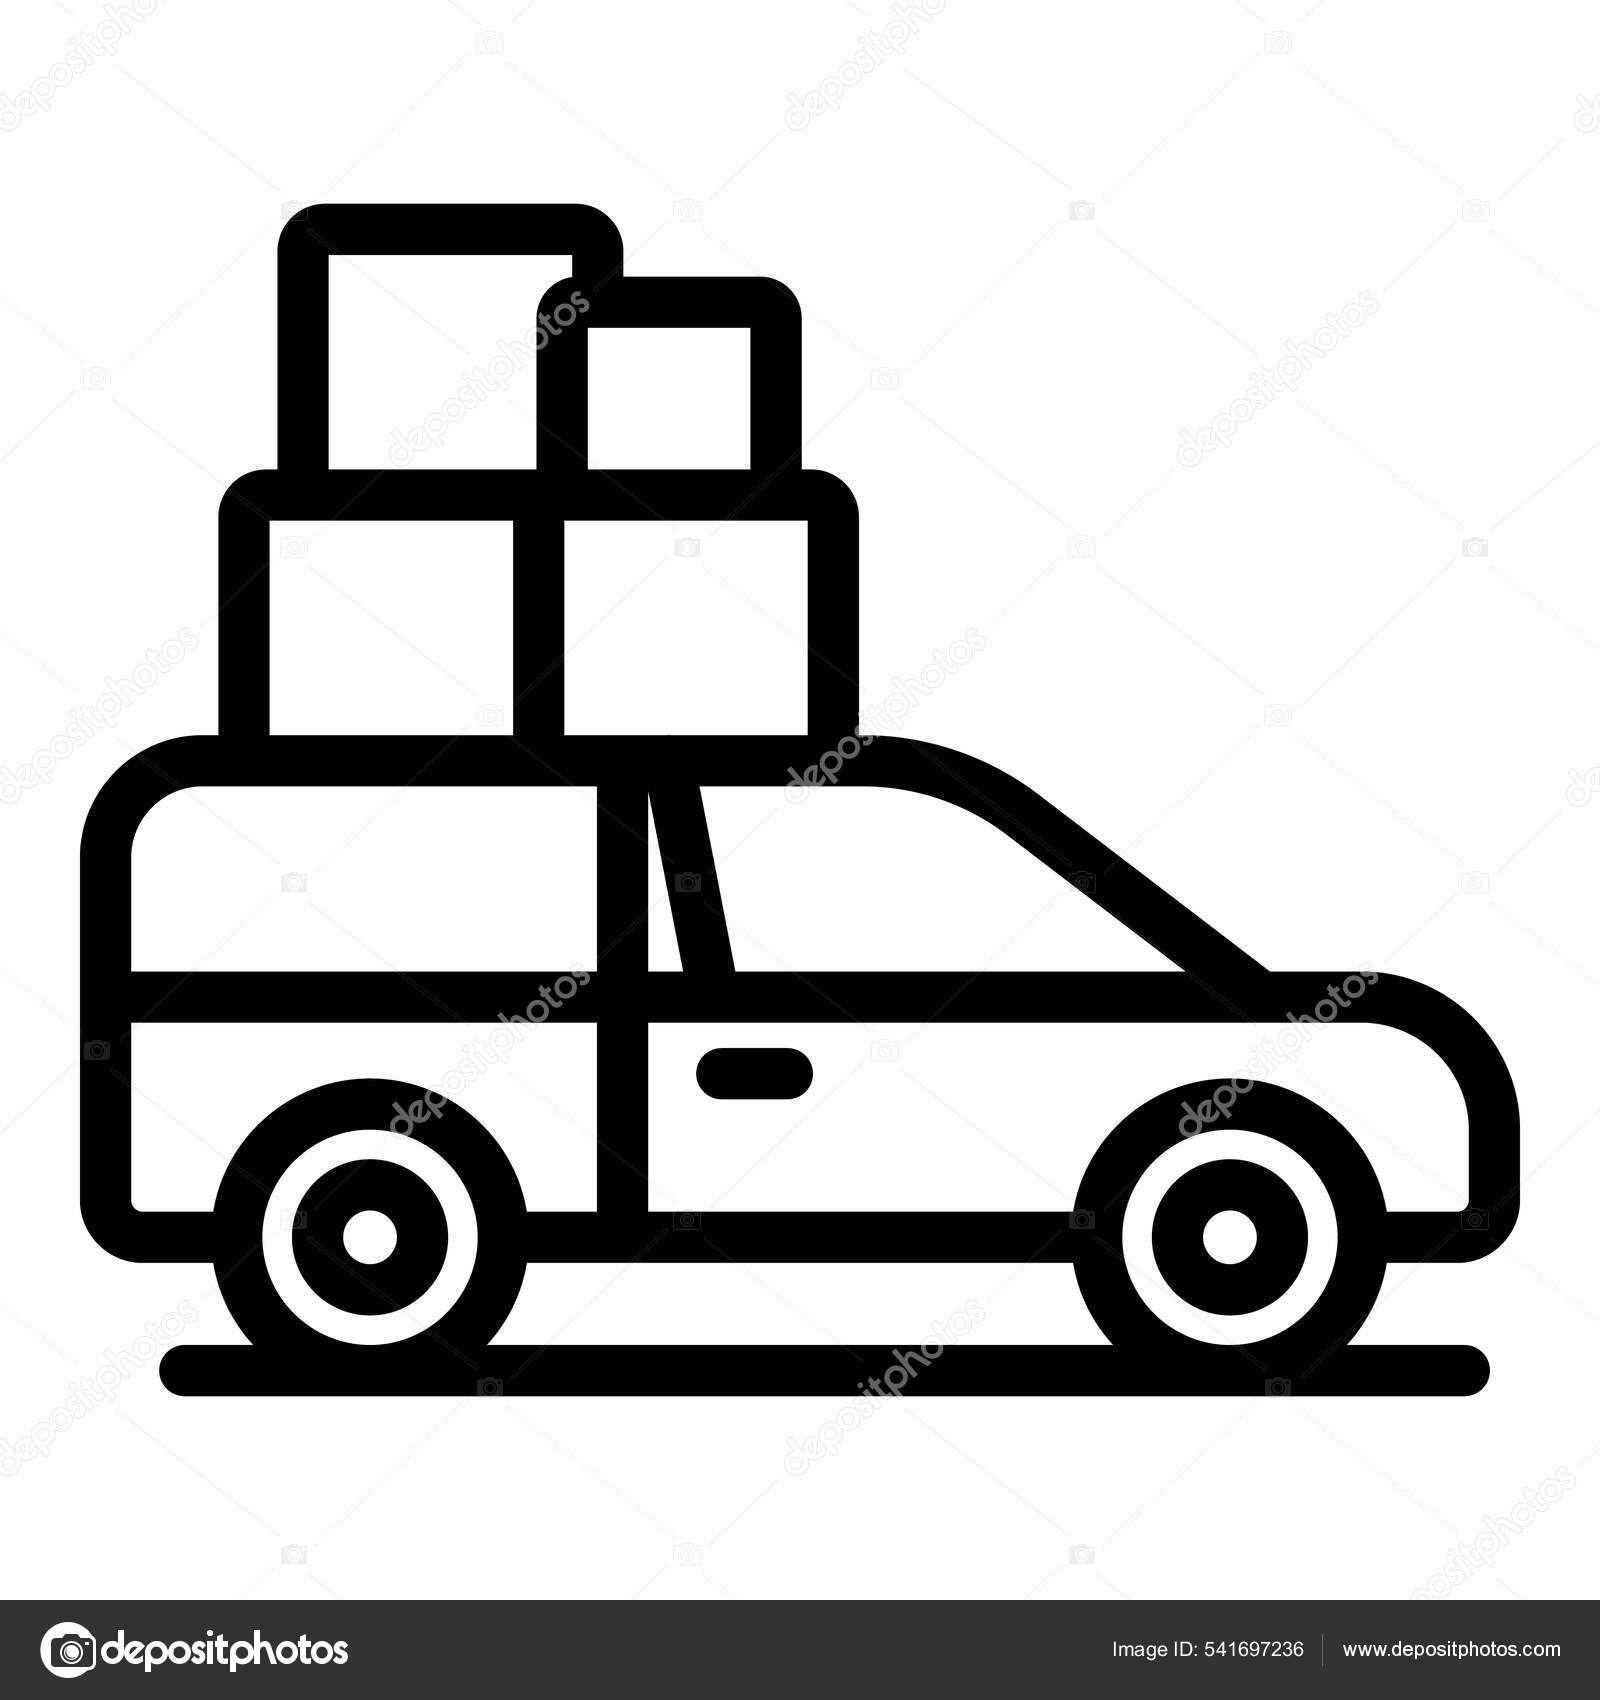 Car Delivery - Compre carro sem sair de casa